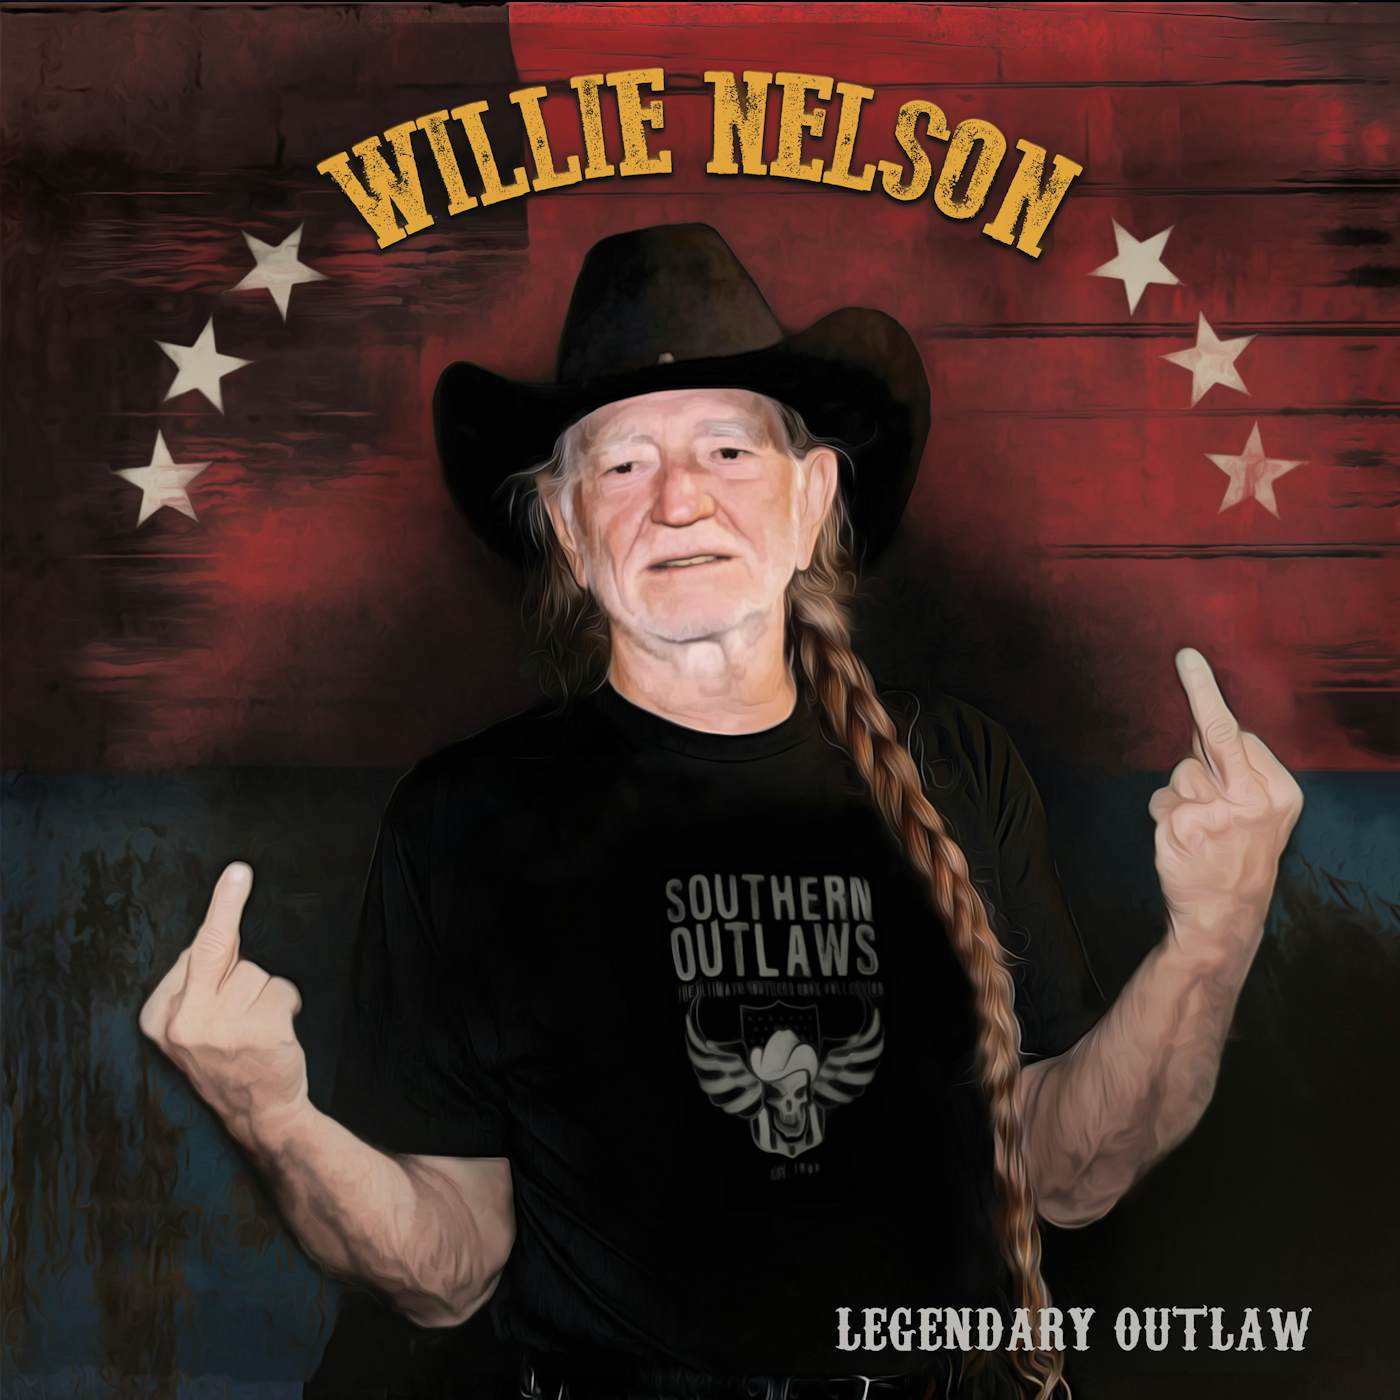 Willie Nelson LEGENDARY OUTLAW (MULTI-COLOR VINYL) Vinyl Record